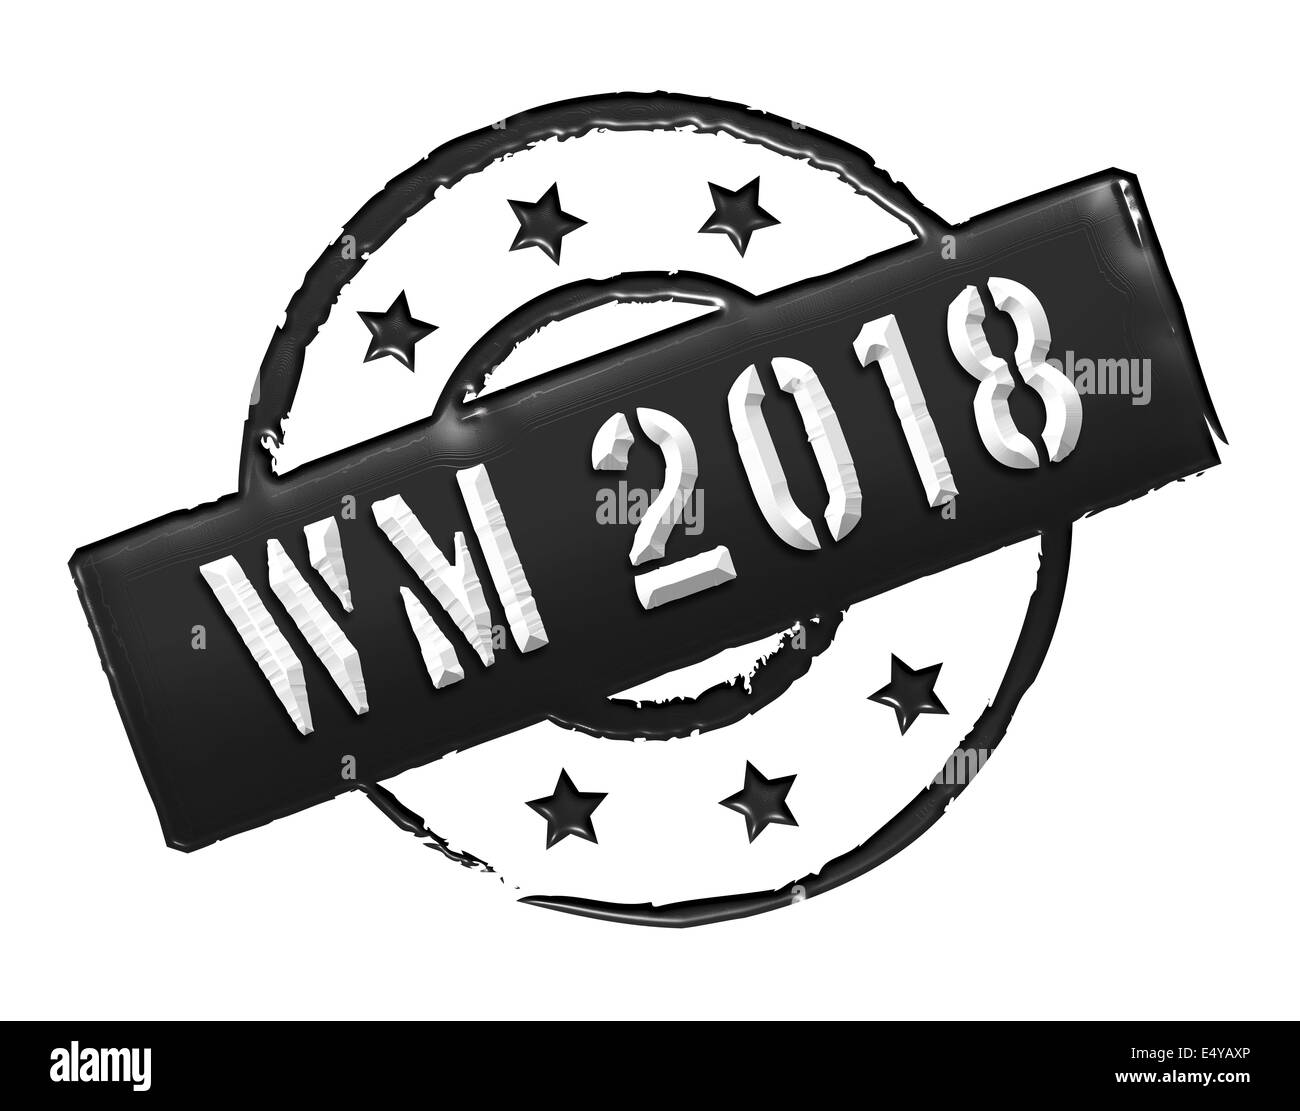 Stamp - WM 2018 Stock Photo